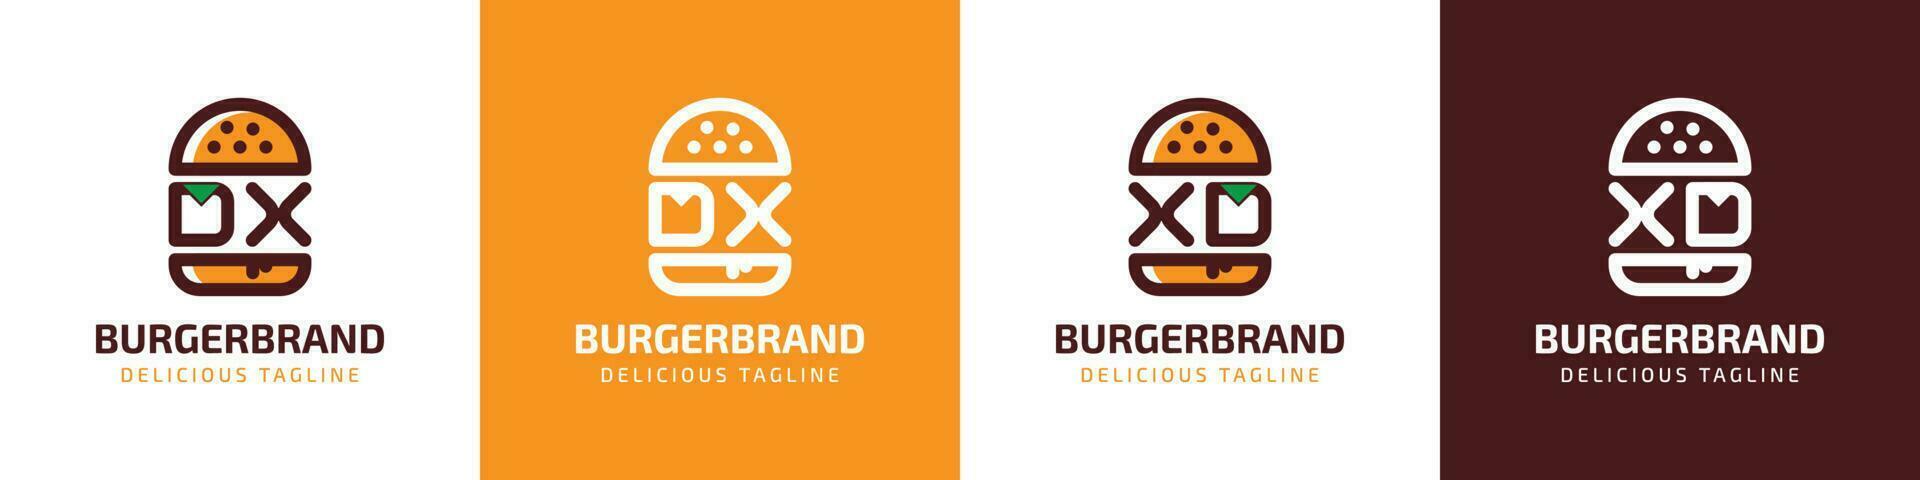 lettera dx e xd hamburger logo, adatto per qualunque attività commerciale relazionato per hamburger con dx o xd iniziali. vettore